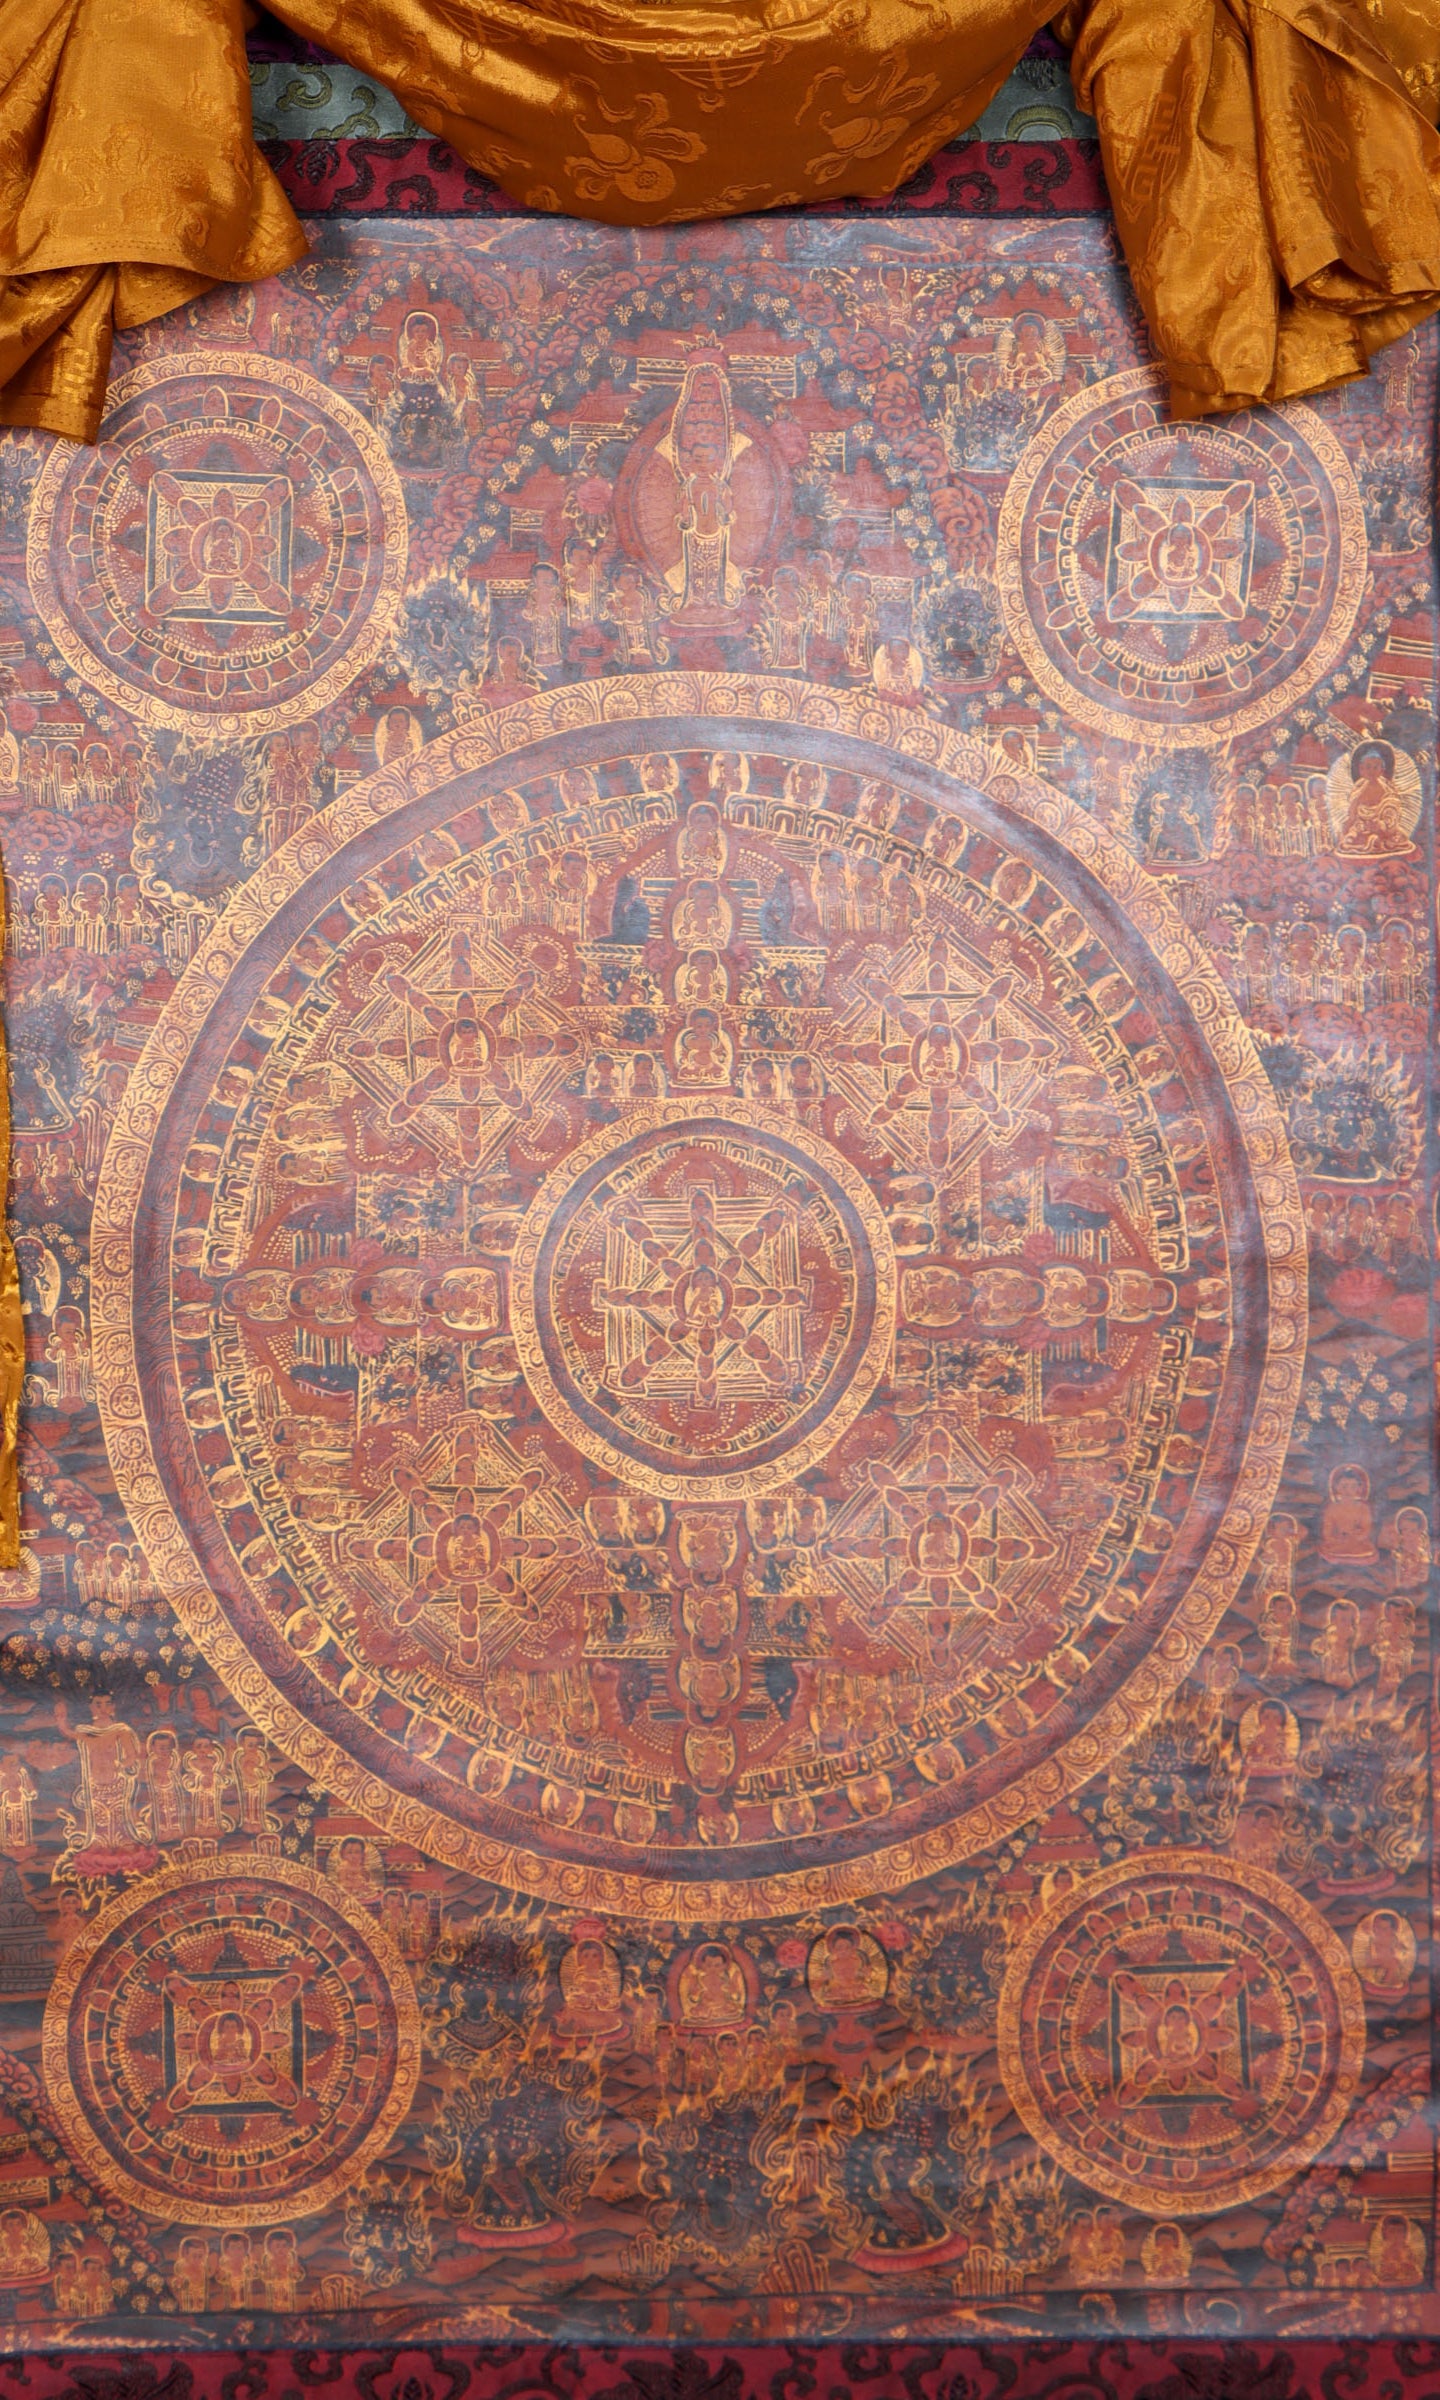 Buddha Mandala Brocade Thangka Painting for spirituality.